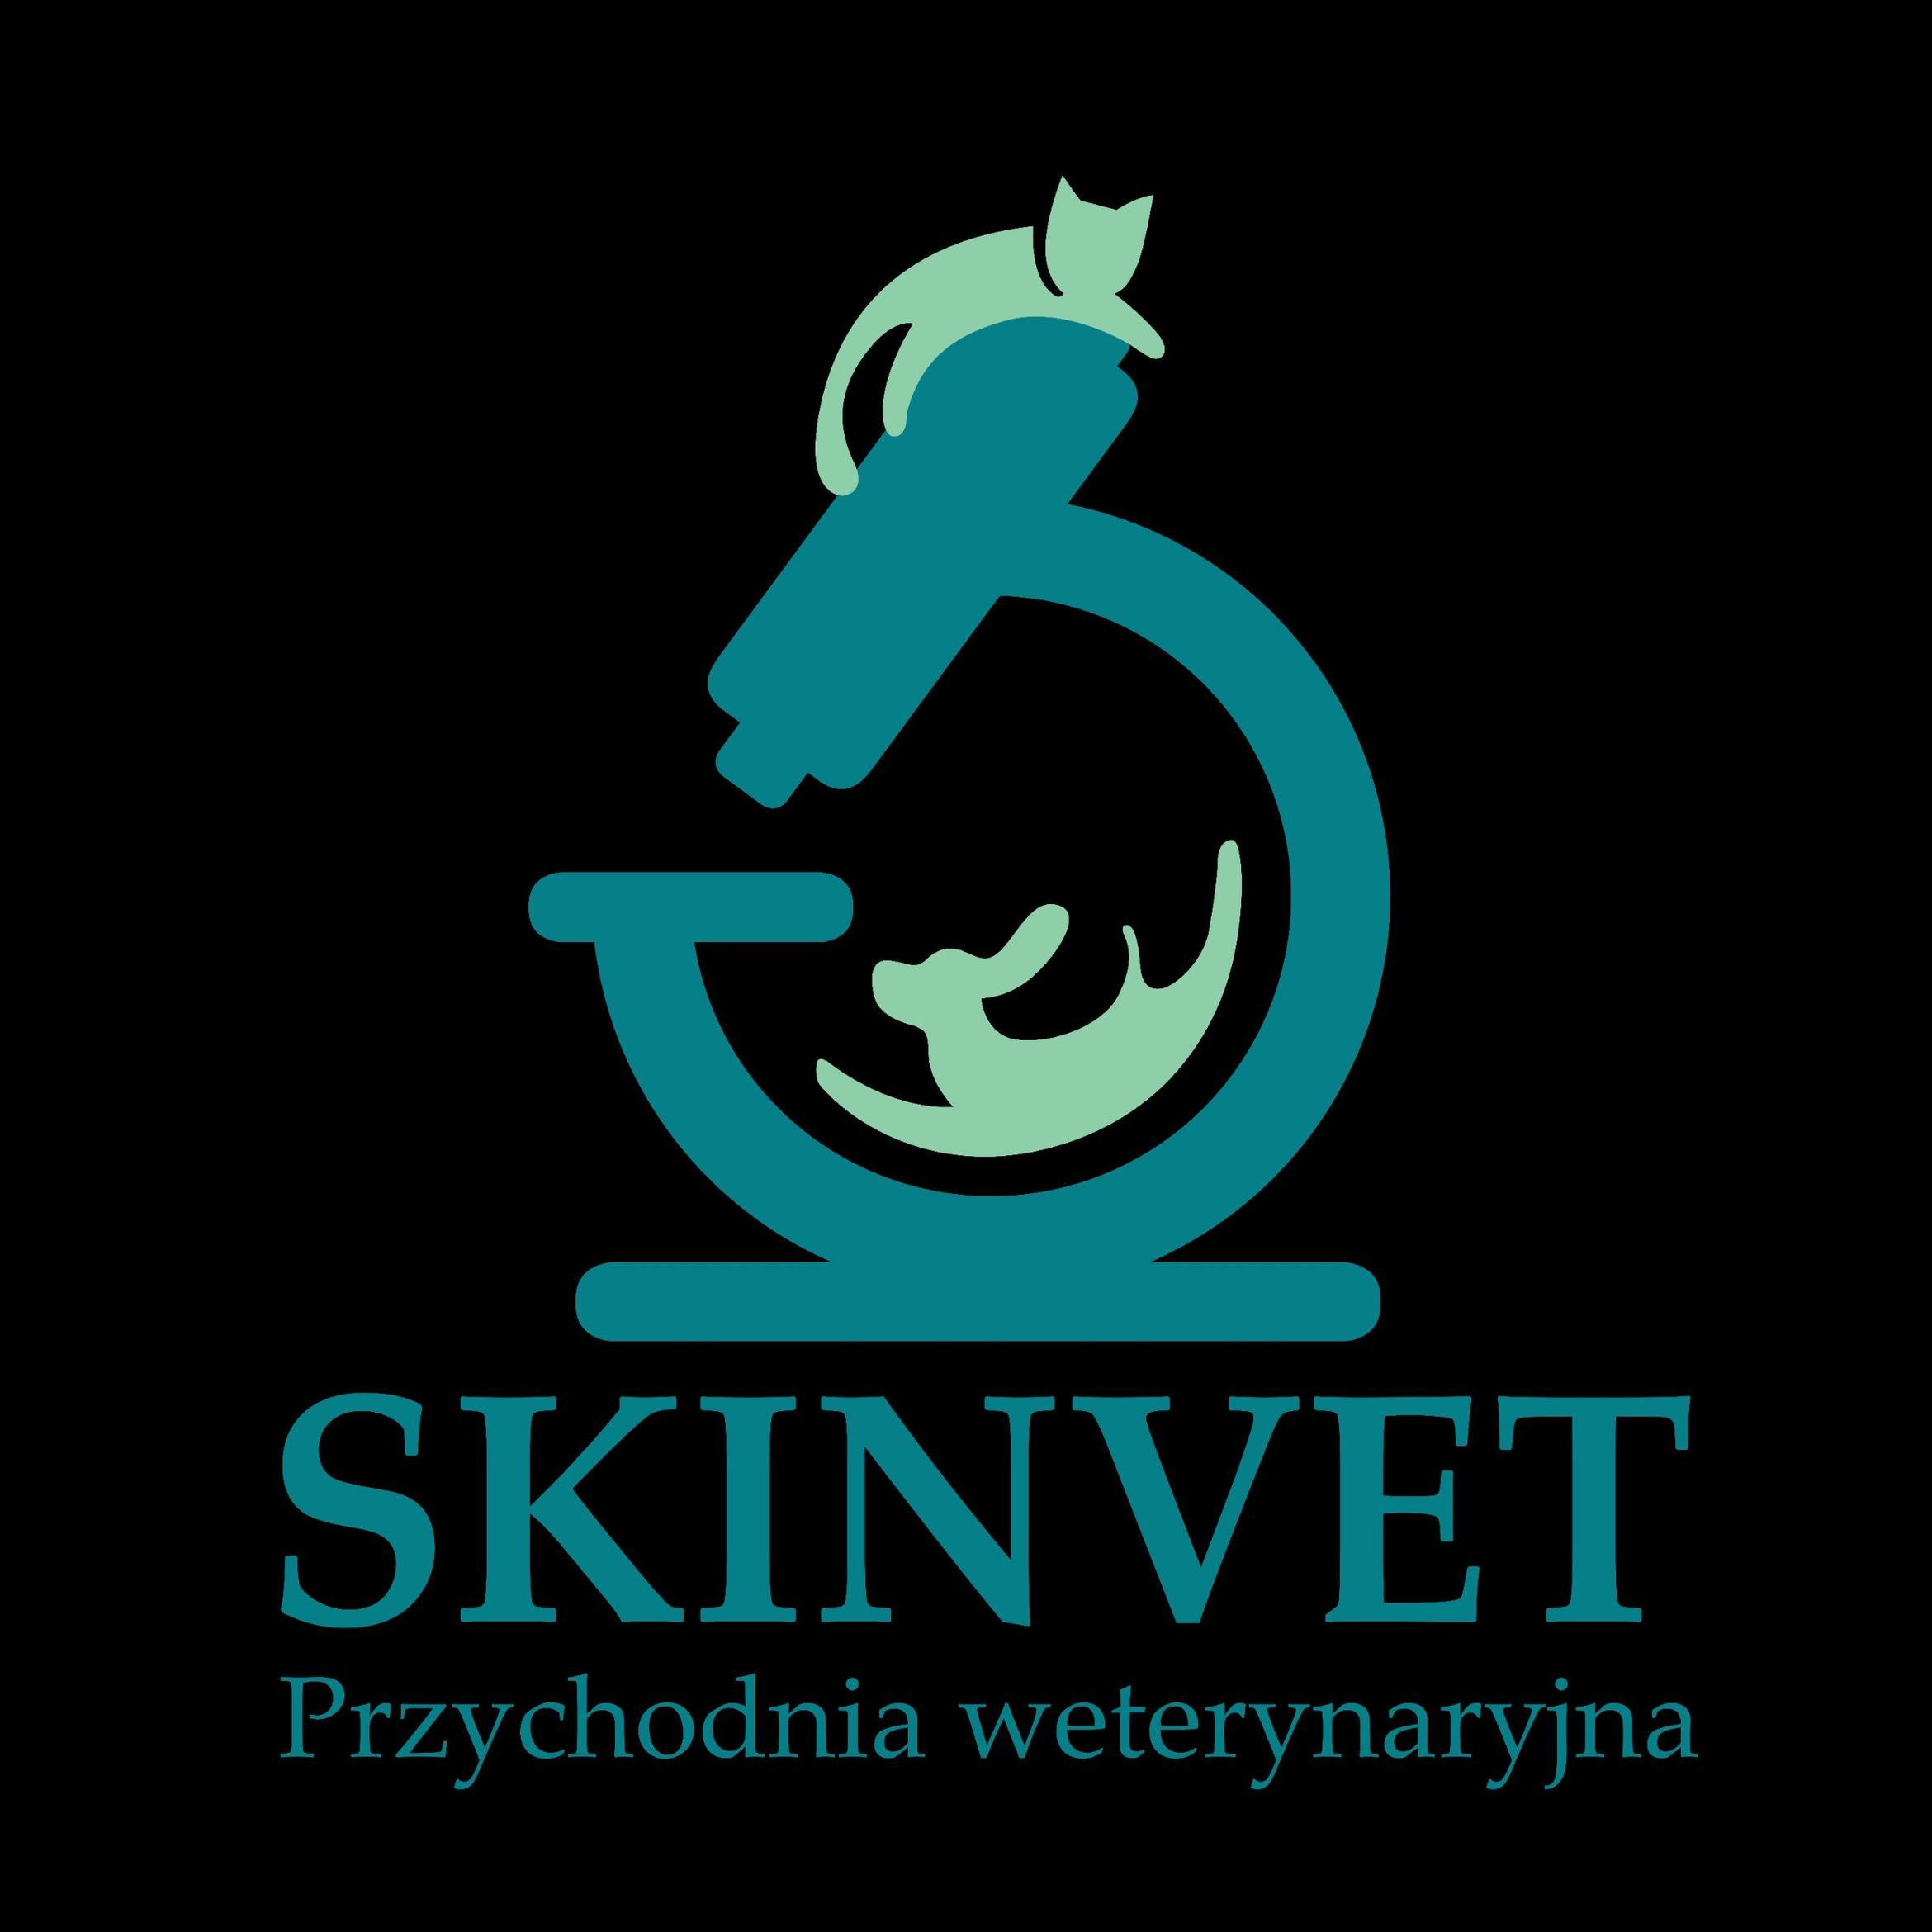 Przychodnia Weterynaryjna „Skinvet”, Piastowska 85, 43-300, Bielsko-Biała